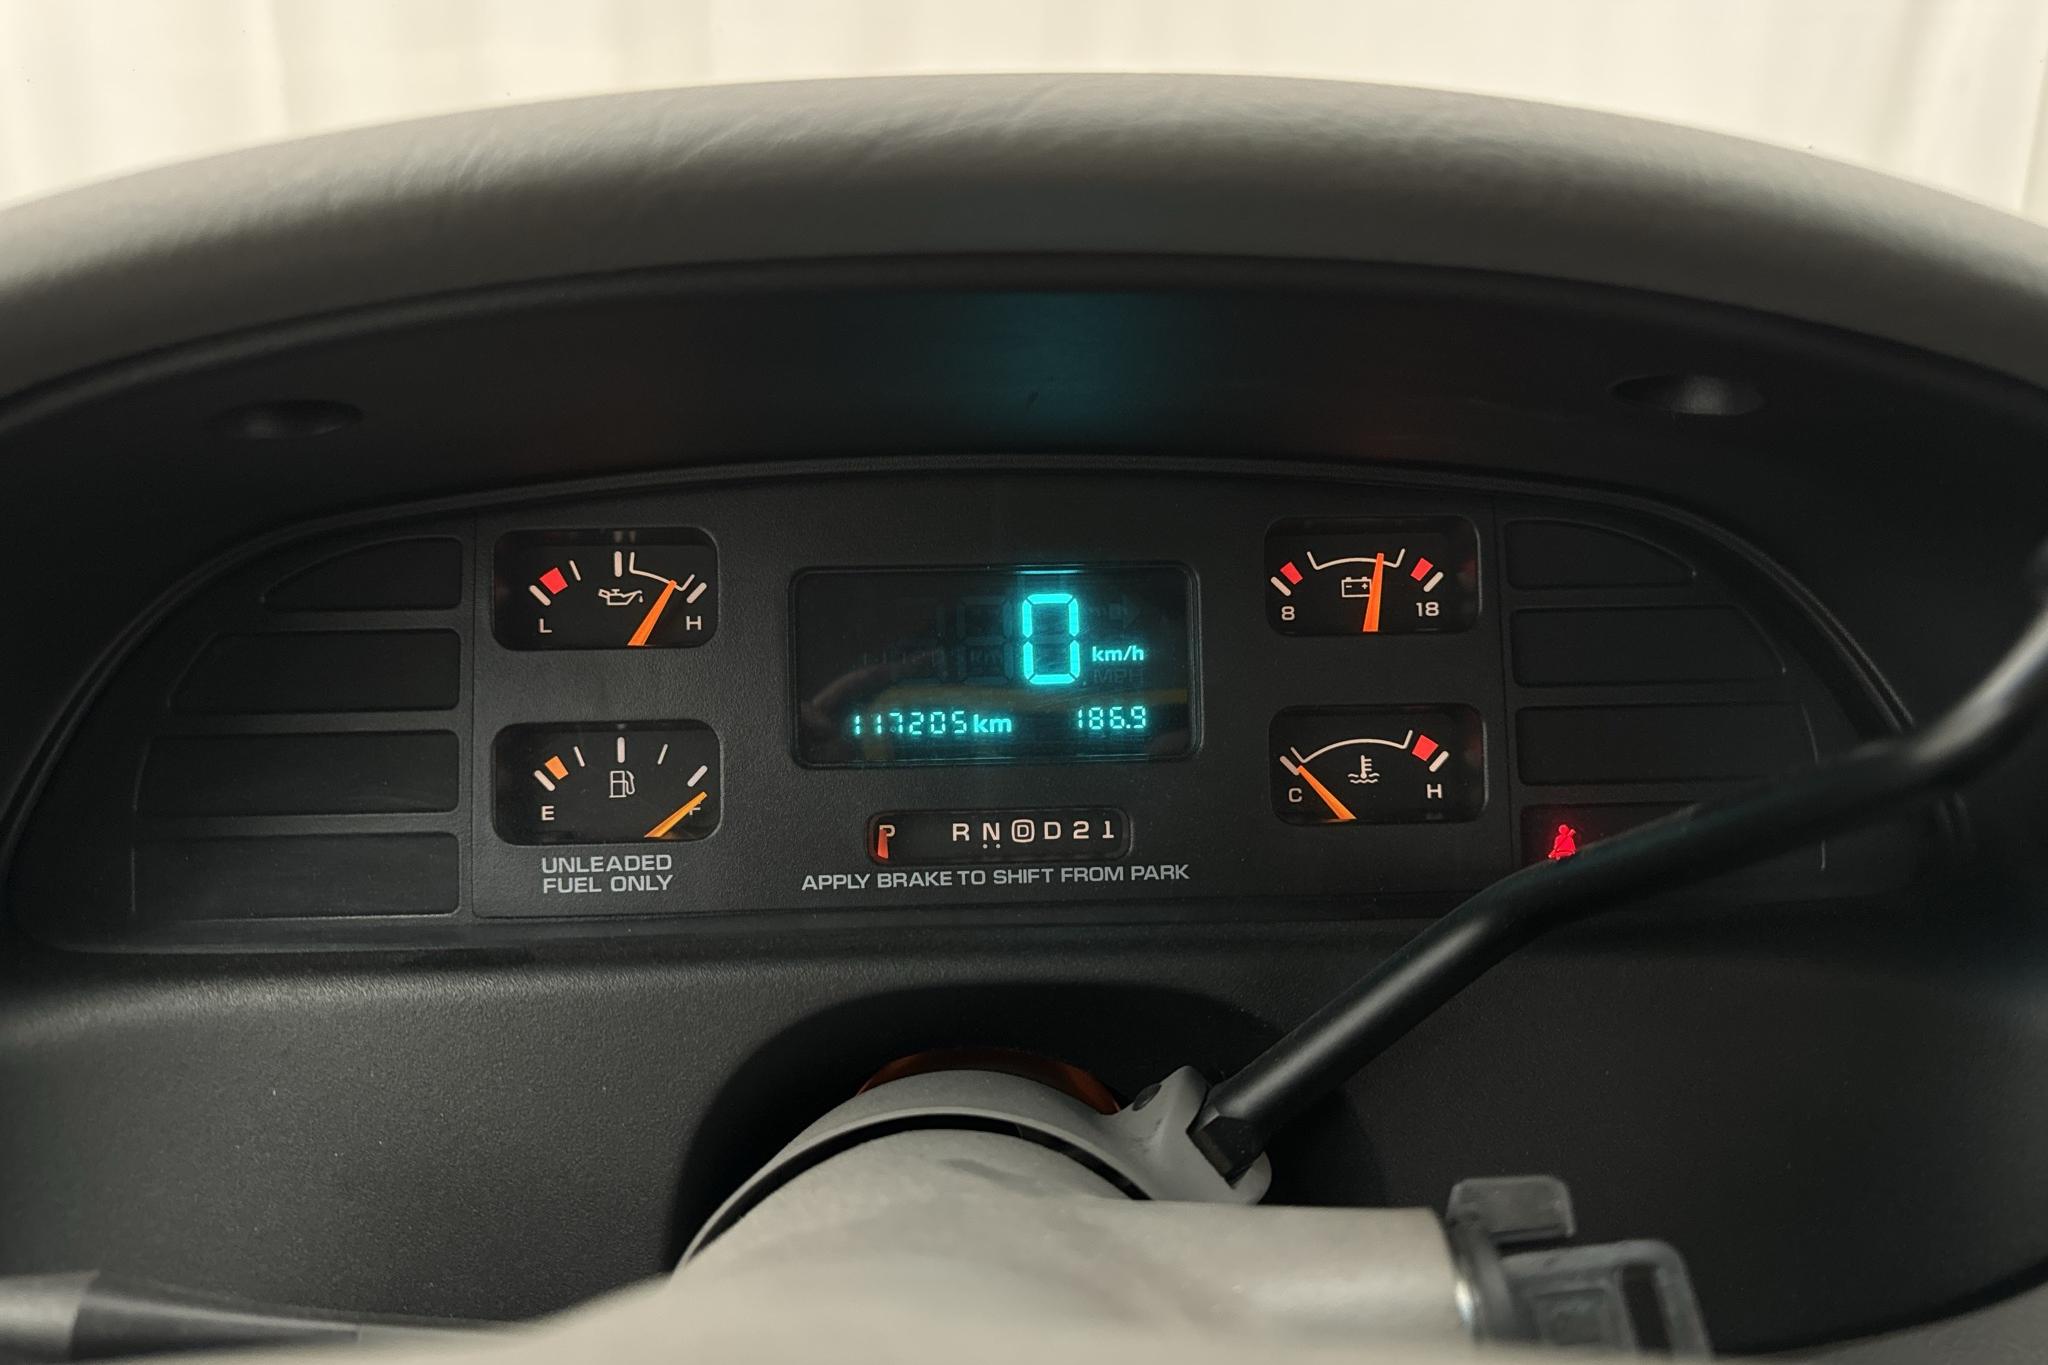 Chevrolet Impala SS 5.7 V8 (265hk) - 117 210 km - Automatyczna - Dark Red - 1995